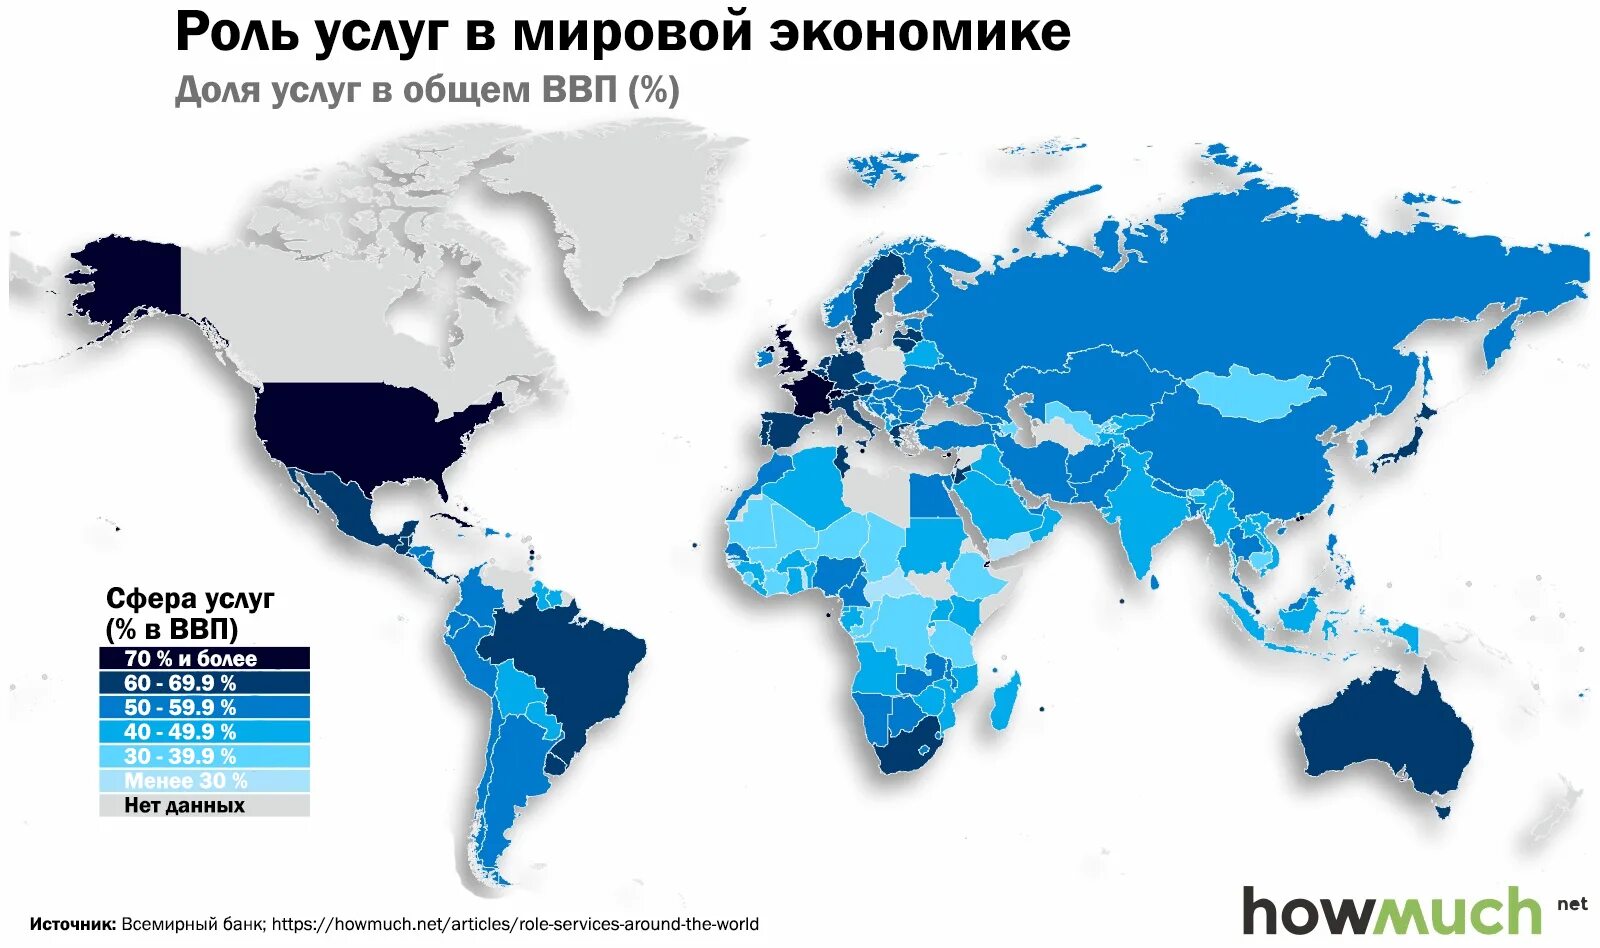 Сфера услуг по странам. Карта экономики стран.